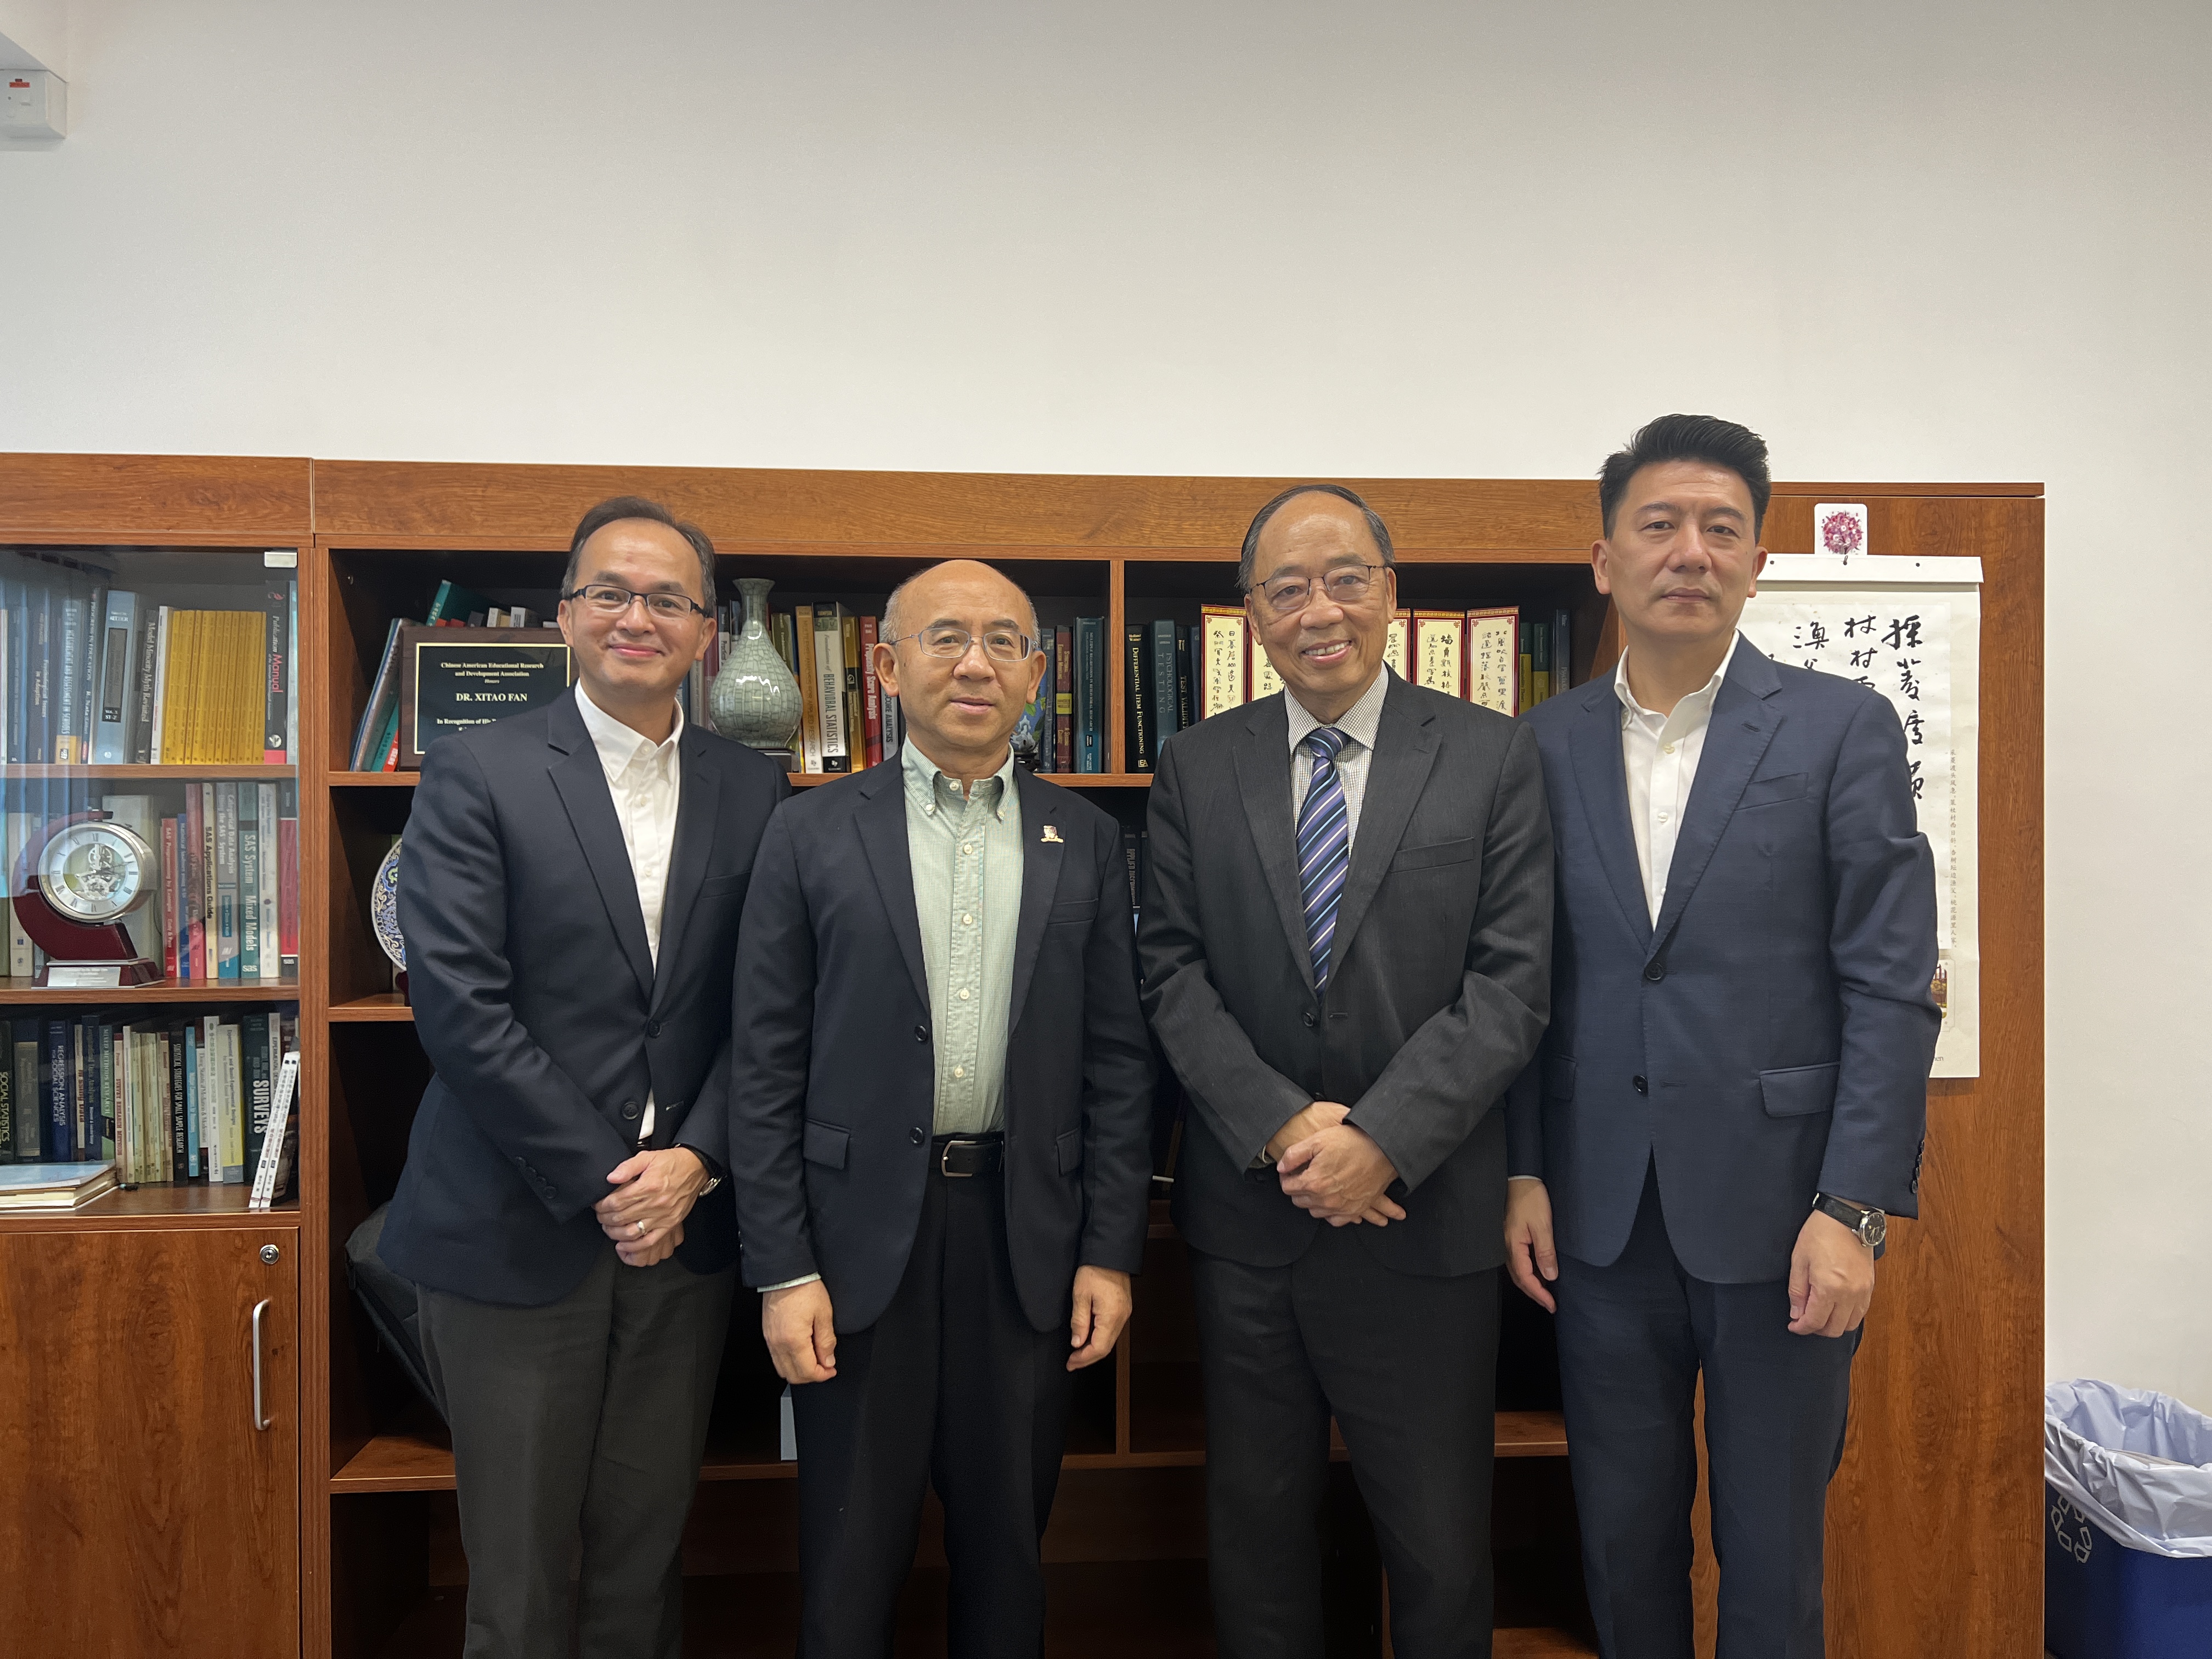 張志鴻主席與唐皓副主席前往香港教育大學、香港中文大學教育學院交流。未來將幫助两间大学拓展更多大灣區合作机遇。